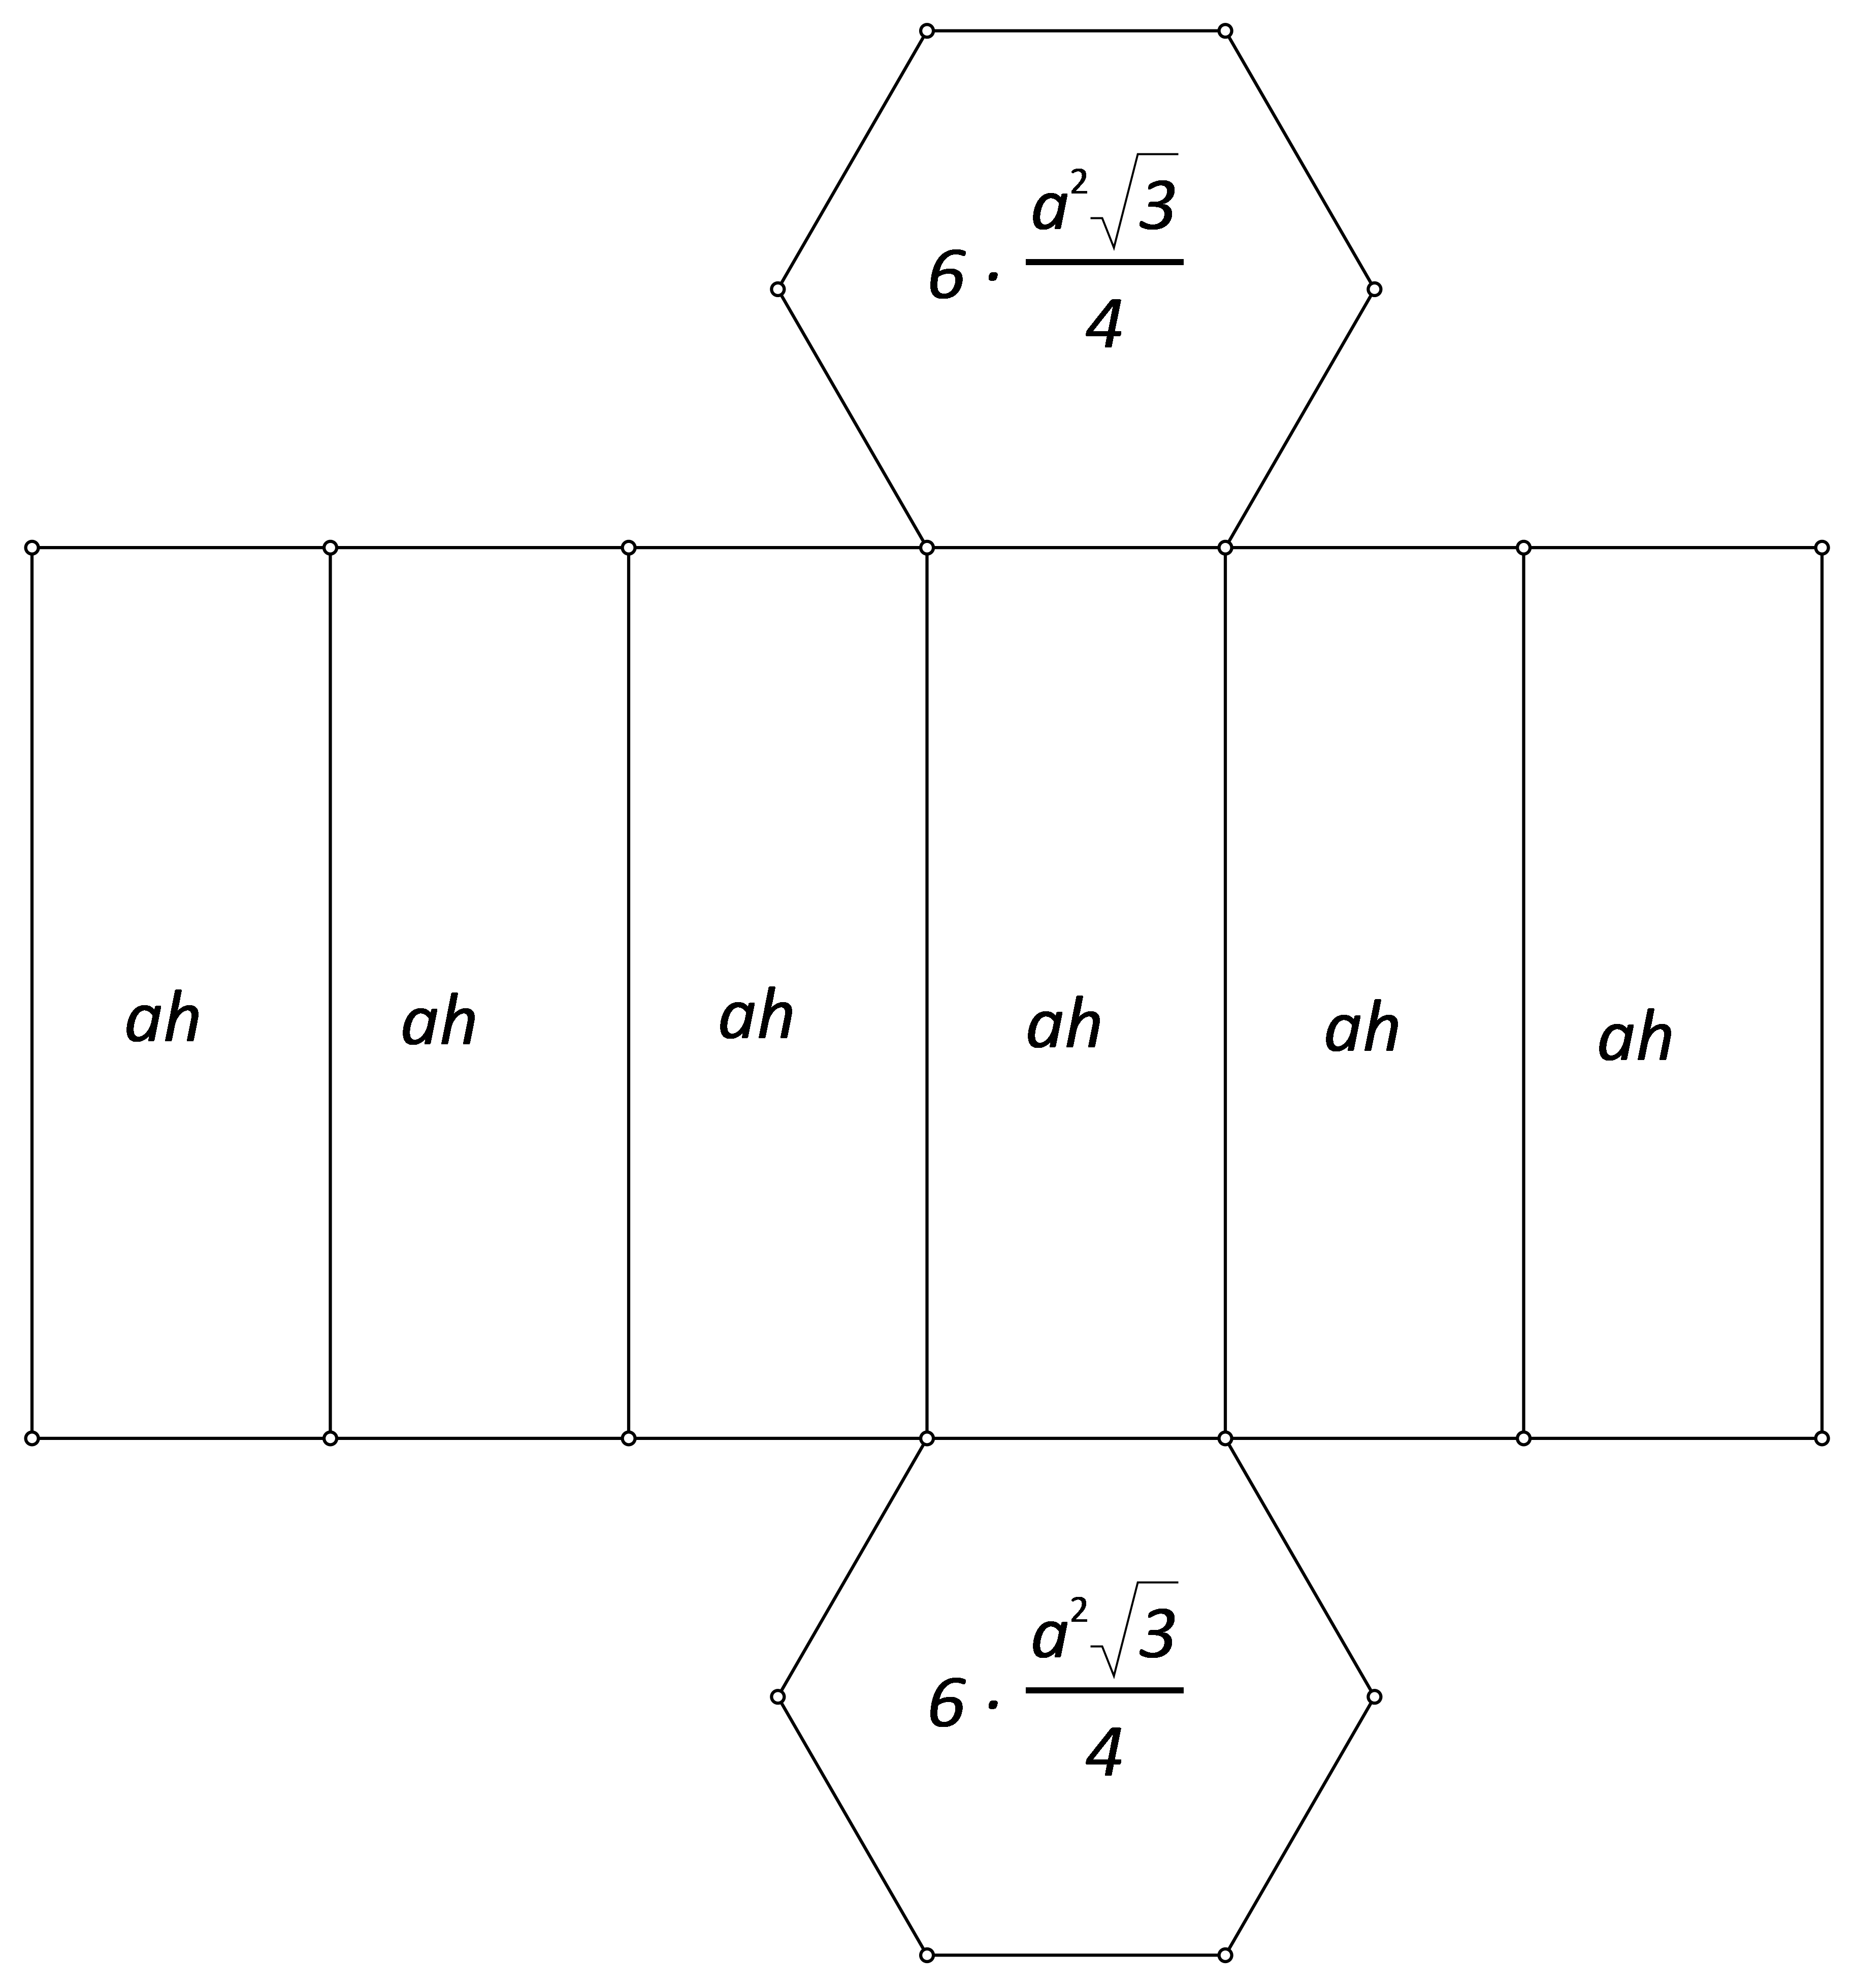 Slika prikazuje mrežu šesterostrane prizme s upisanim površinama strana.